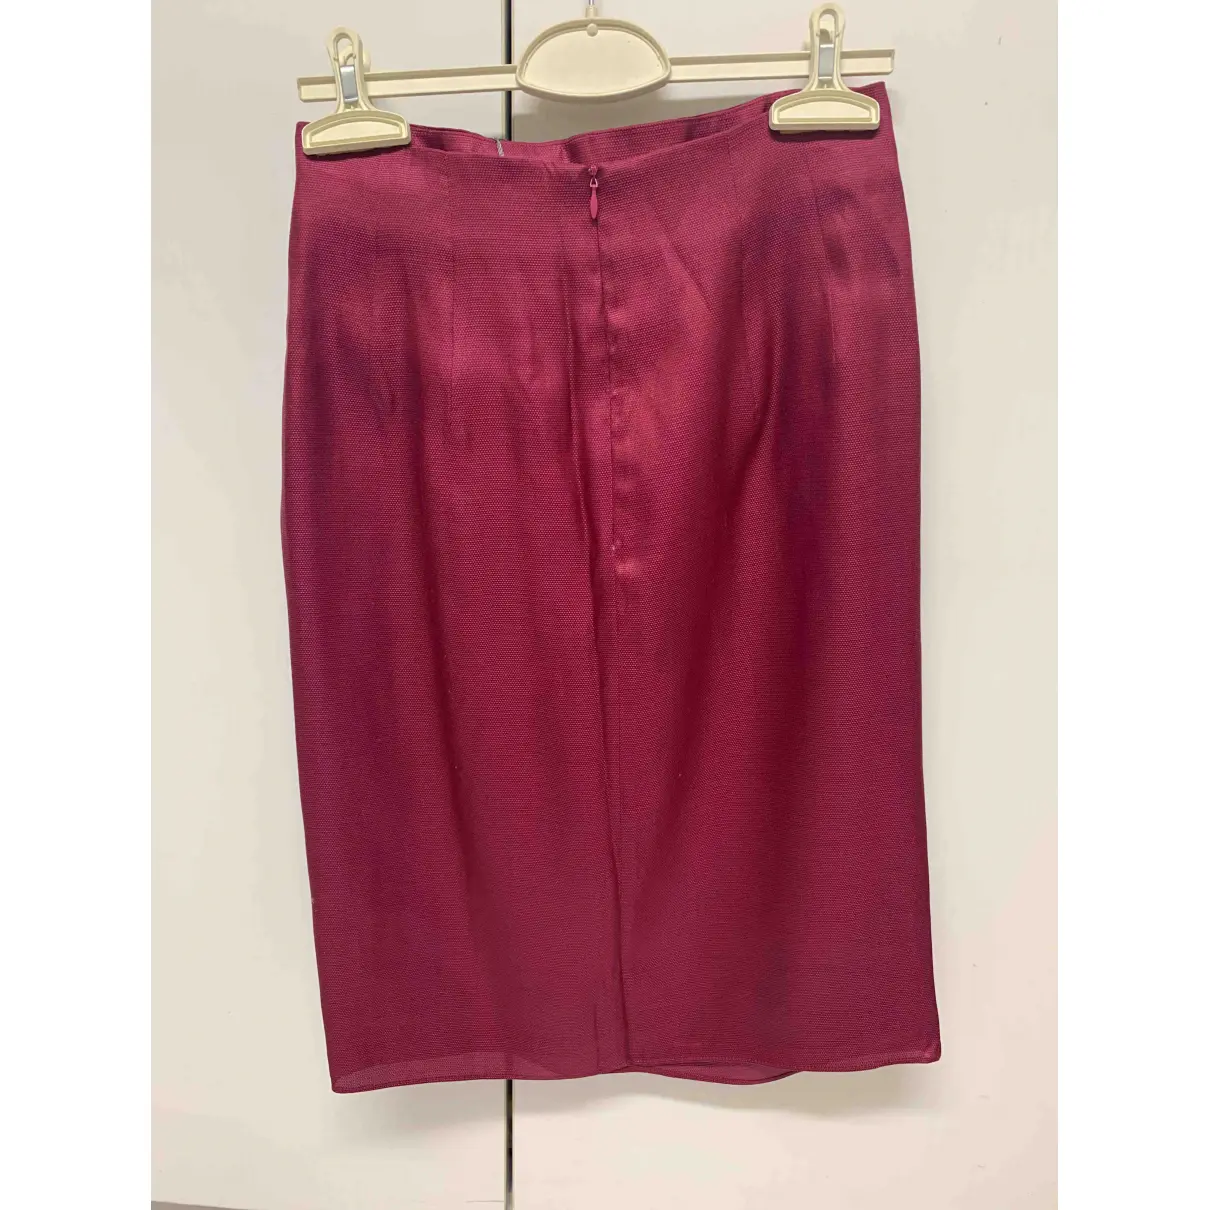 Buy Fendi Silk mid-length skirt online